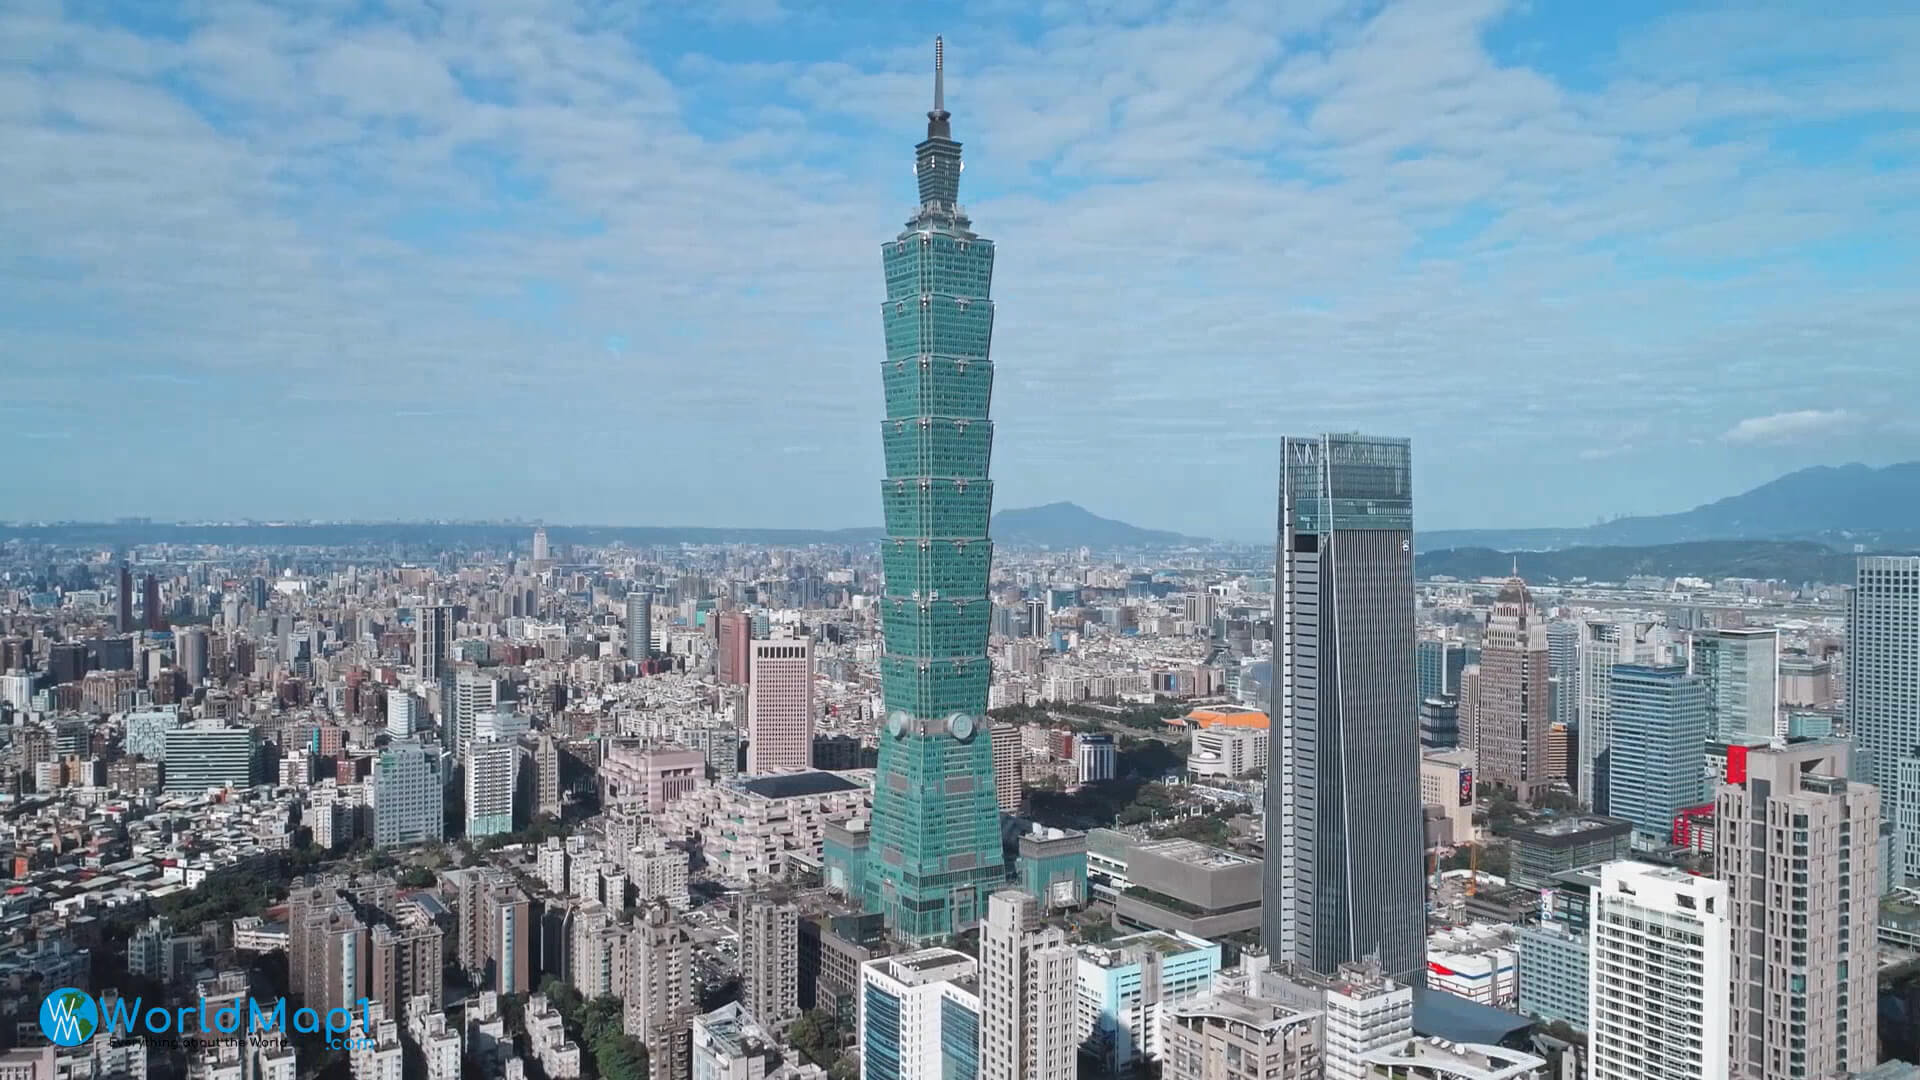 Taiwan Économie - Taipei 101, le plus haut batiment de Taiwan